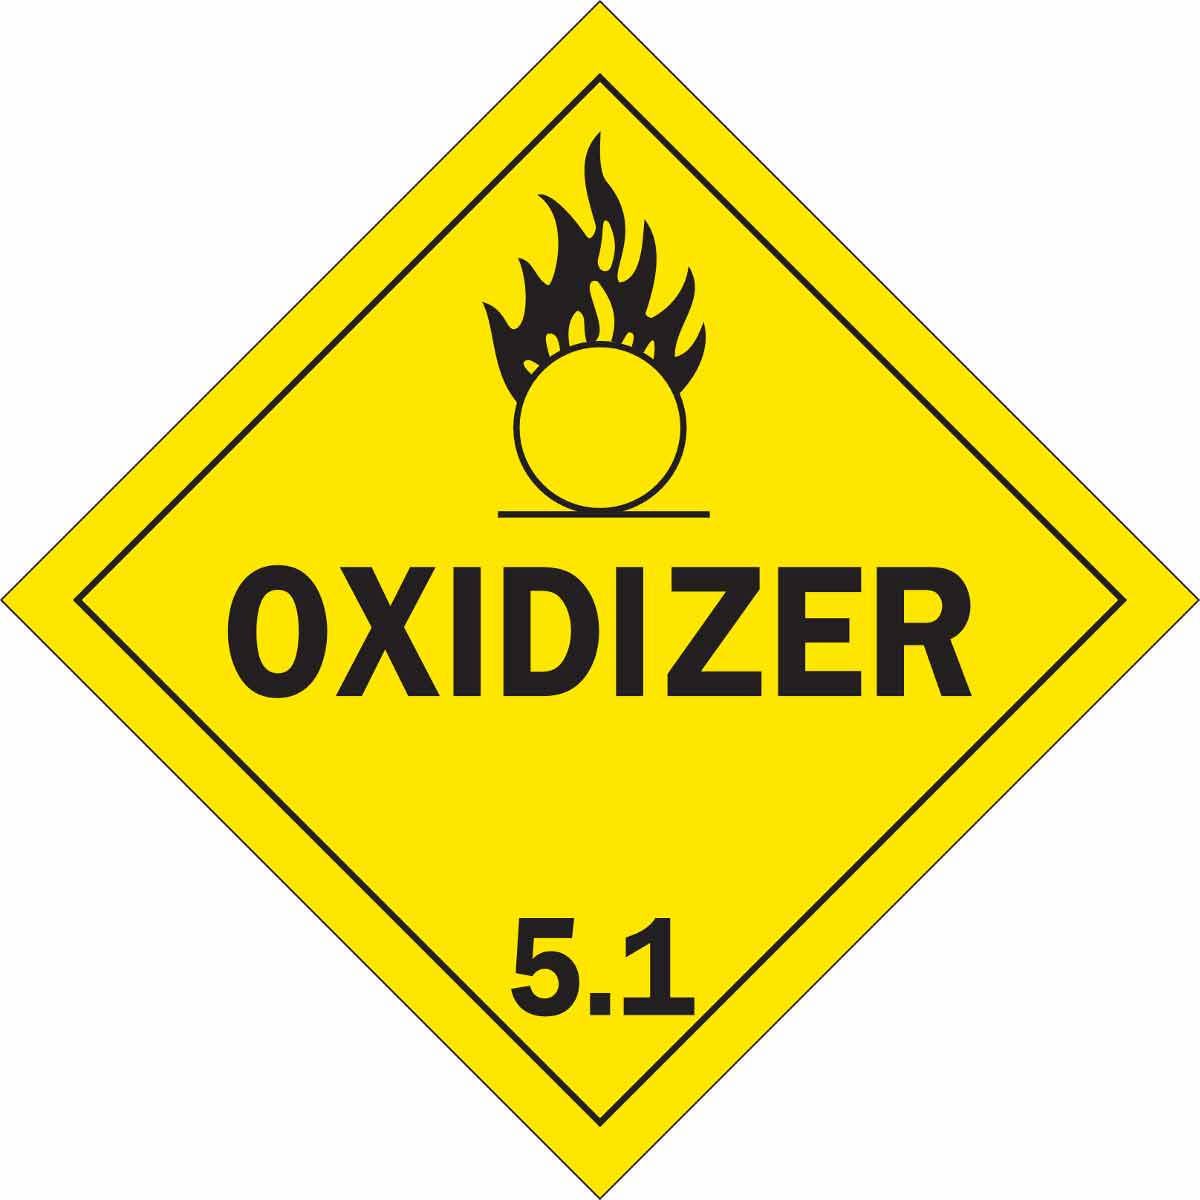 Health and Safety Hazard Sticker Oxidizer Sticker Yellow 